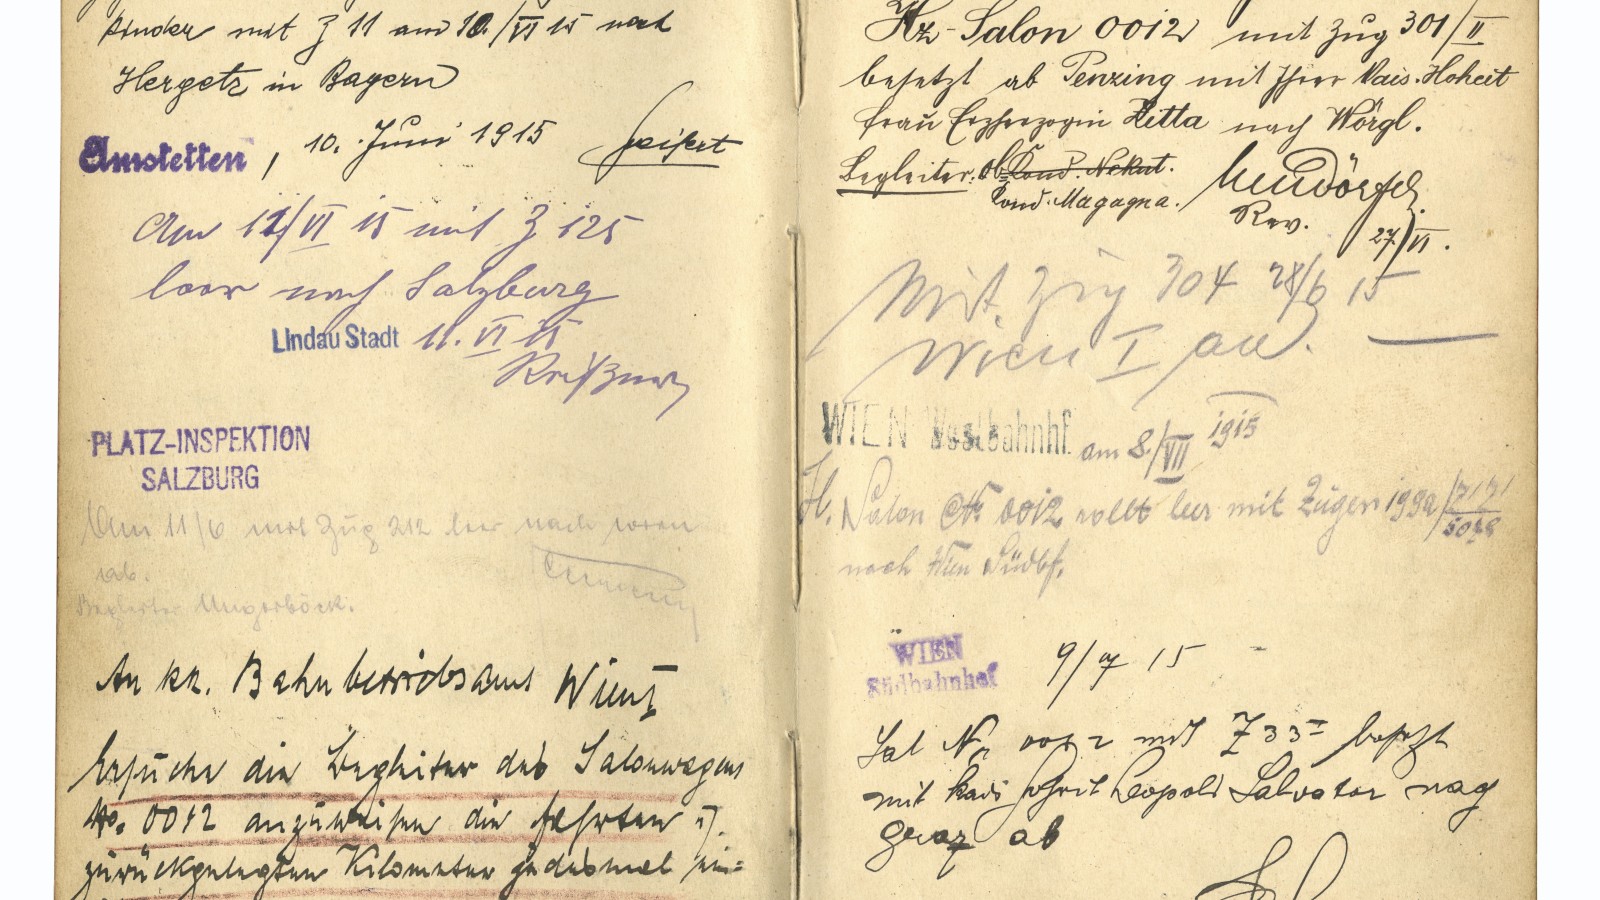 Doppelseite mit Eintragungen aus dem Kondukteurbuch, z. B. Fahrt von Erzherzogin Zita von Penzing nach Wörgl am 27. Juni 1915